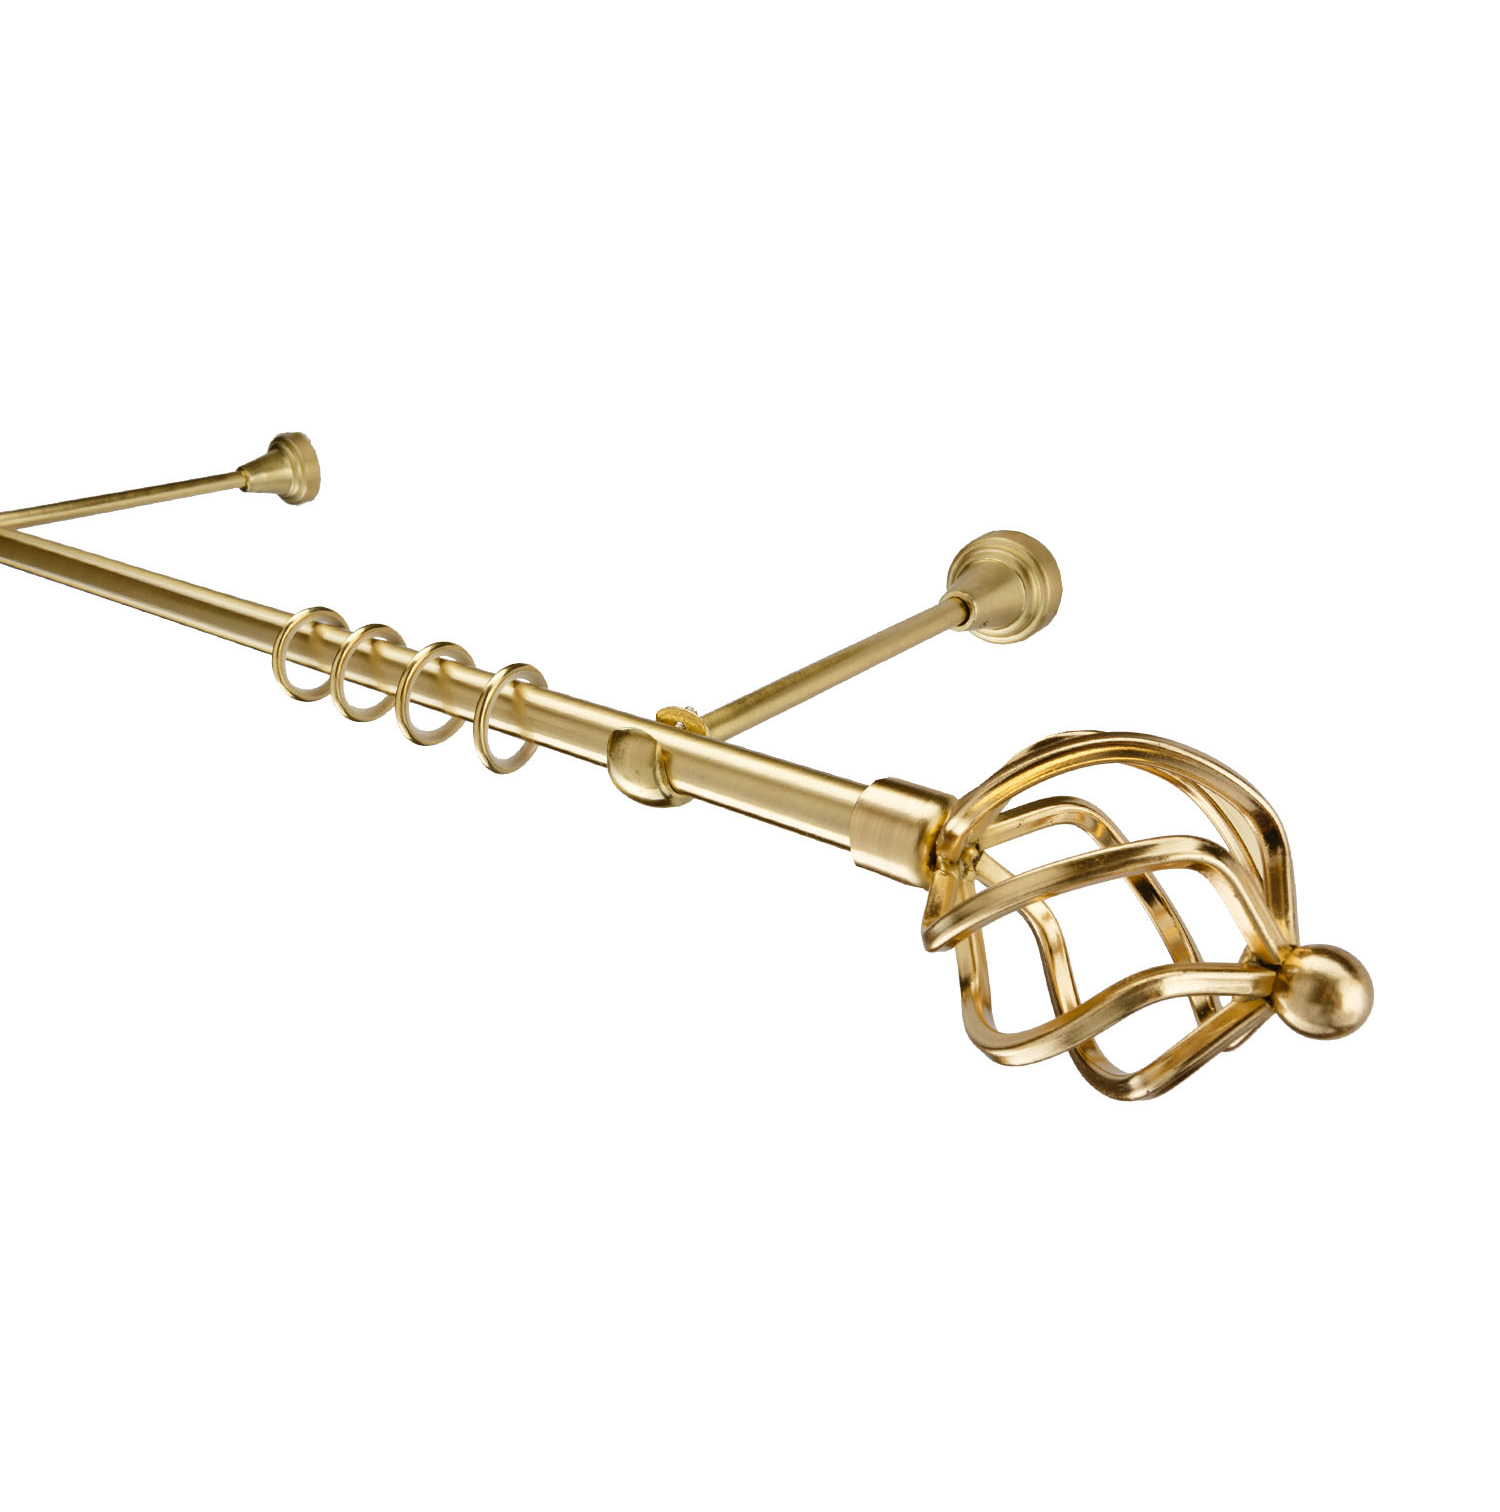 Металлический карниз для штор Солярис, однорядный 16 мм, золото, гладкая штанга, длина 240 см